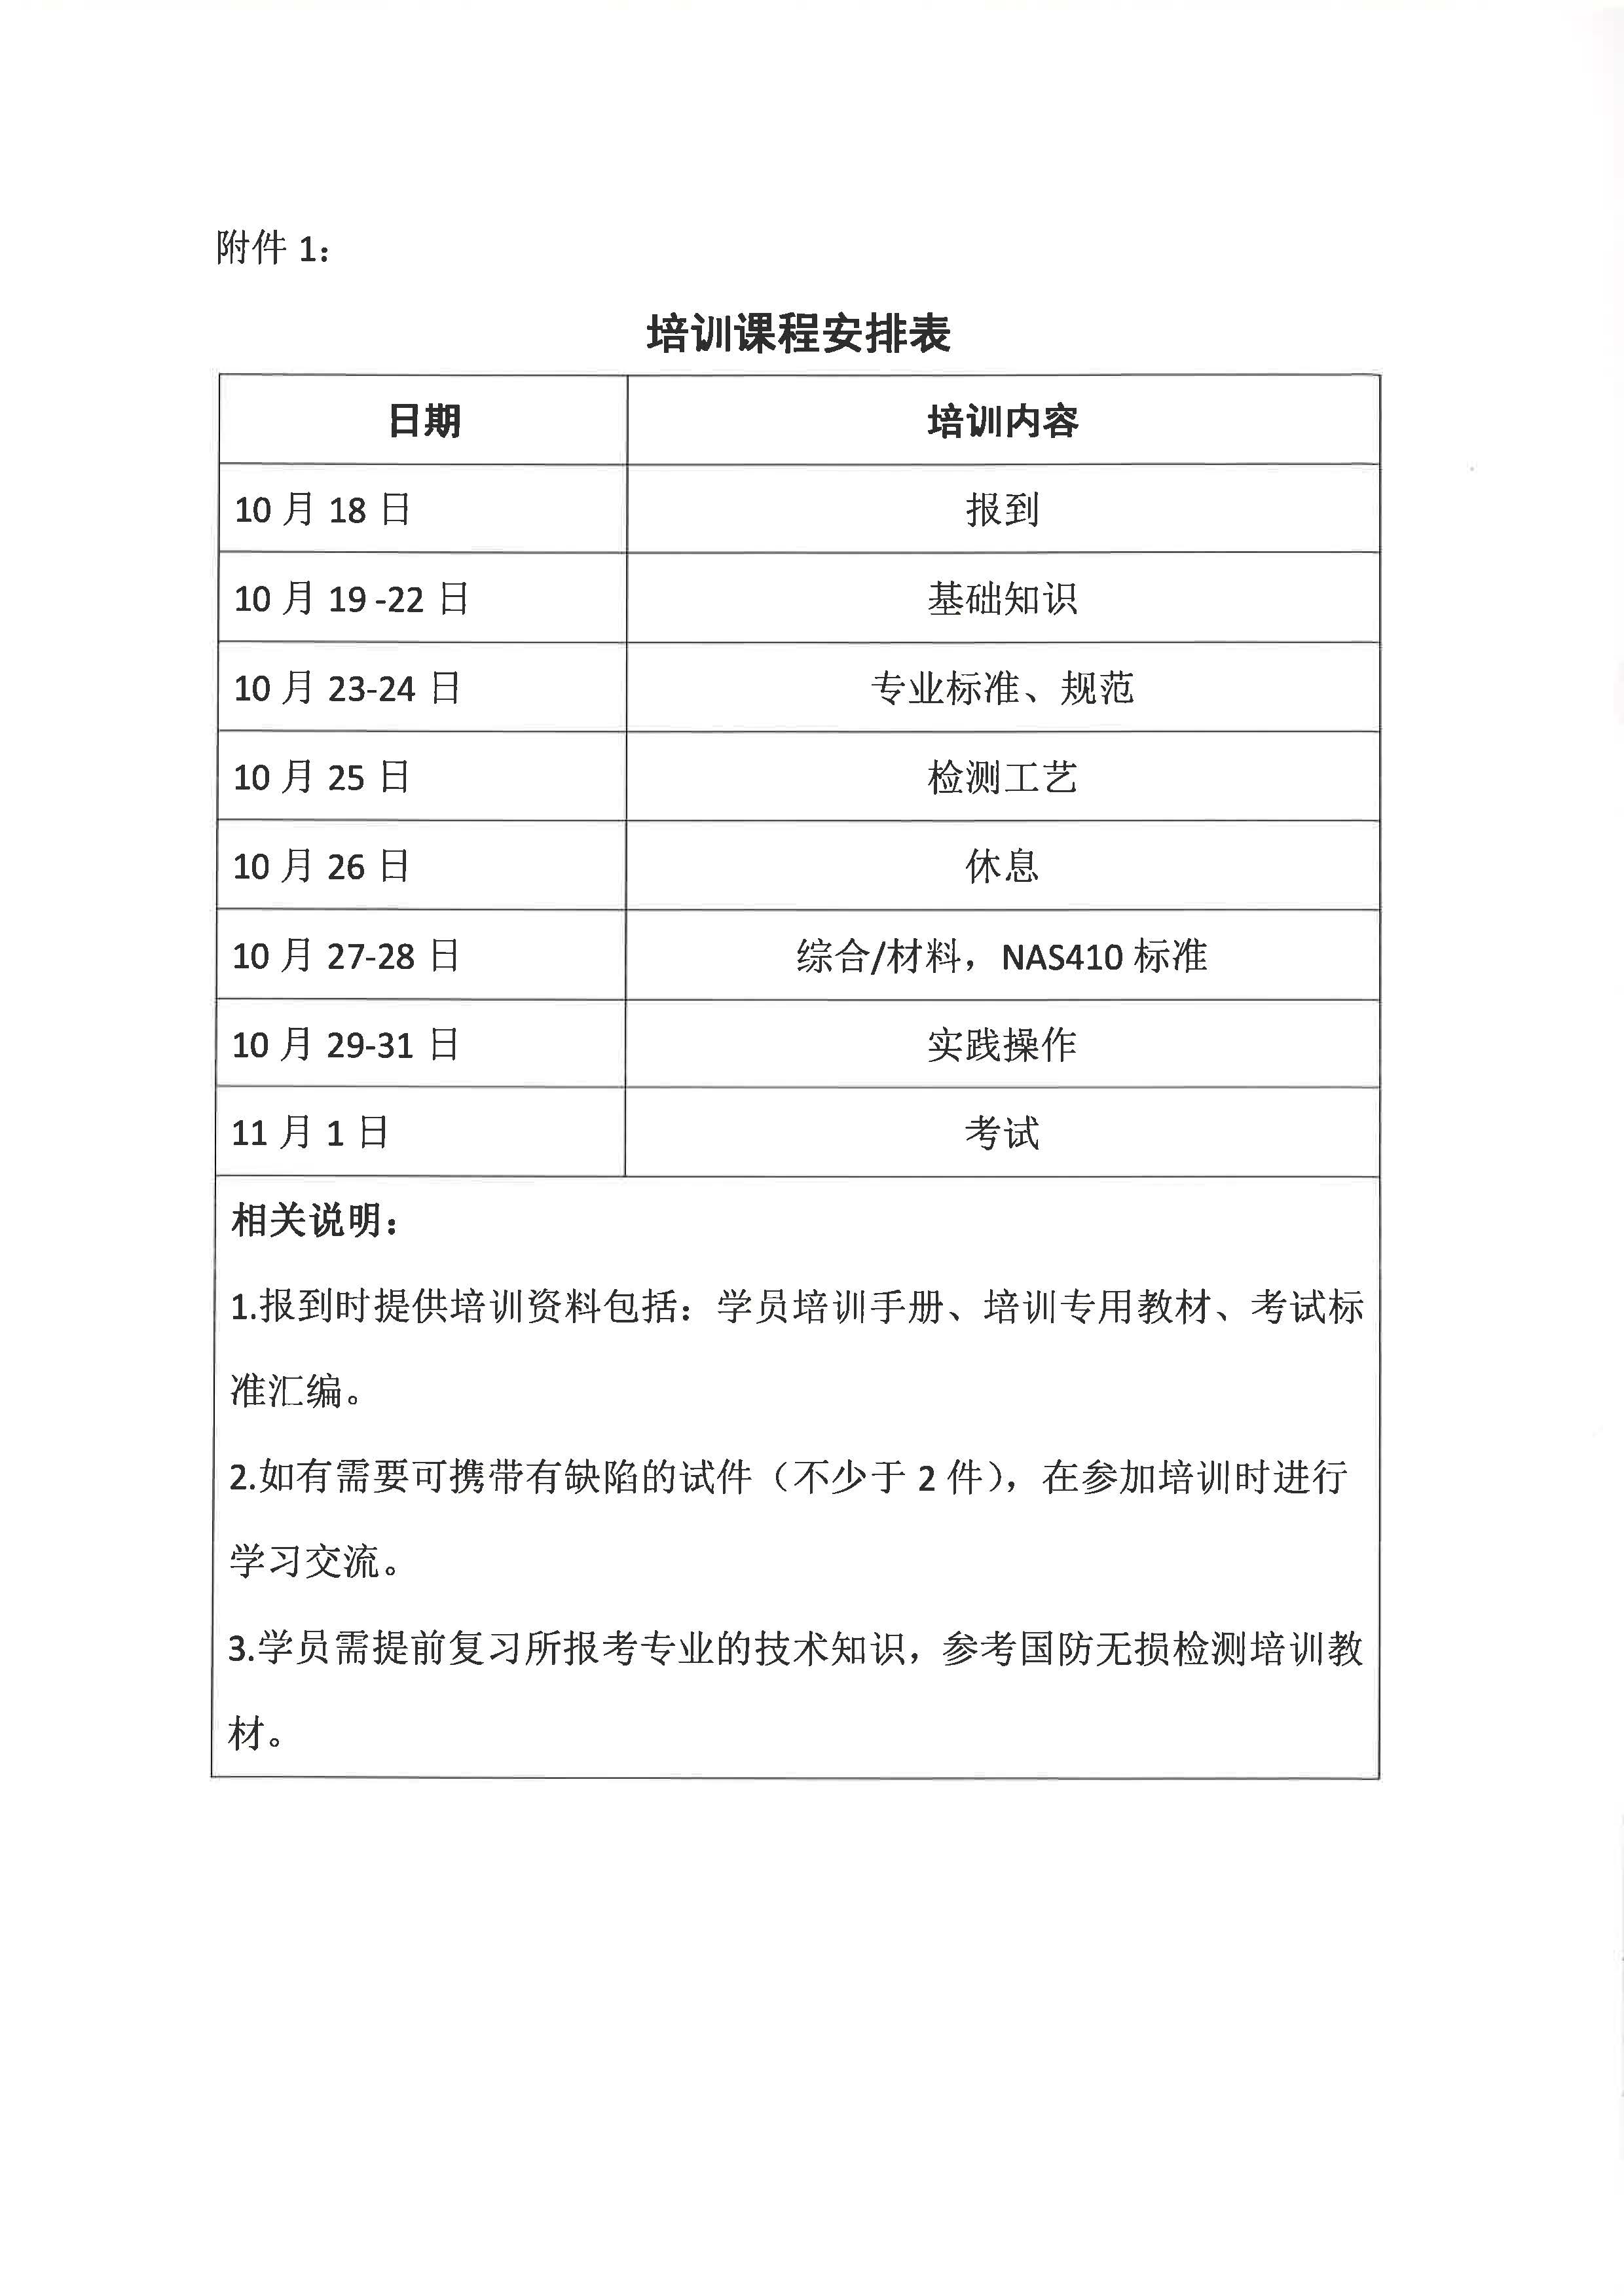 关于开展2019年上海国际宇航NAS410、EN4179资格无损检测人员认证培训的通知(1)_页面_3.jpg